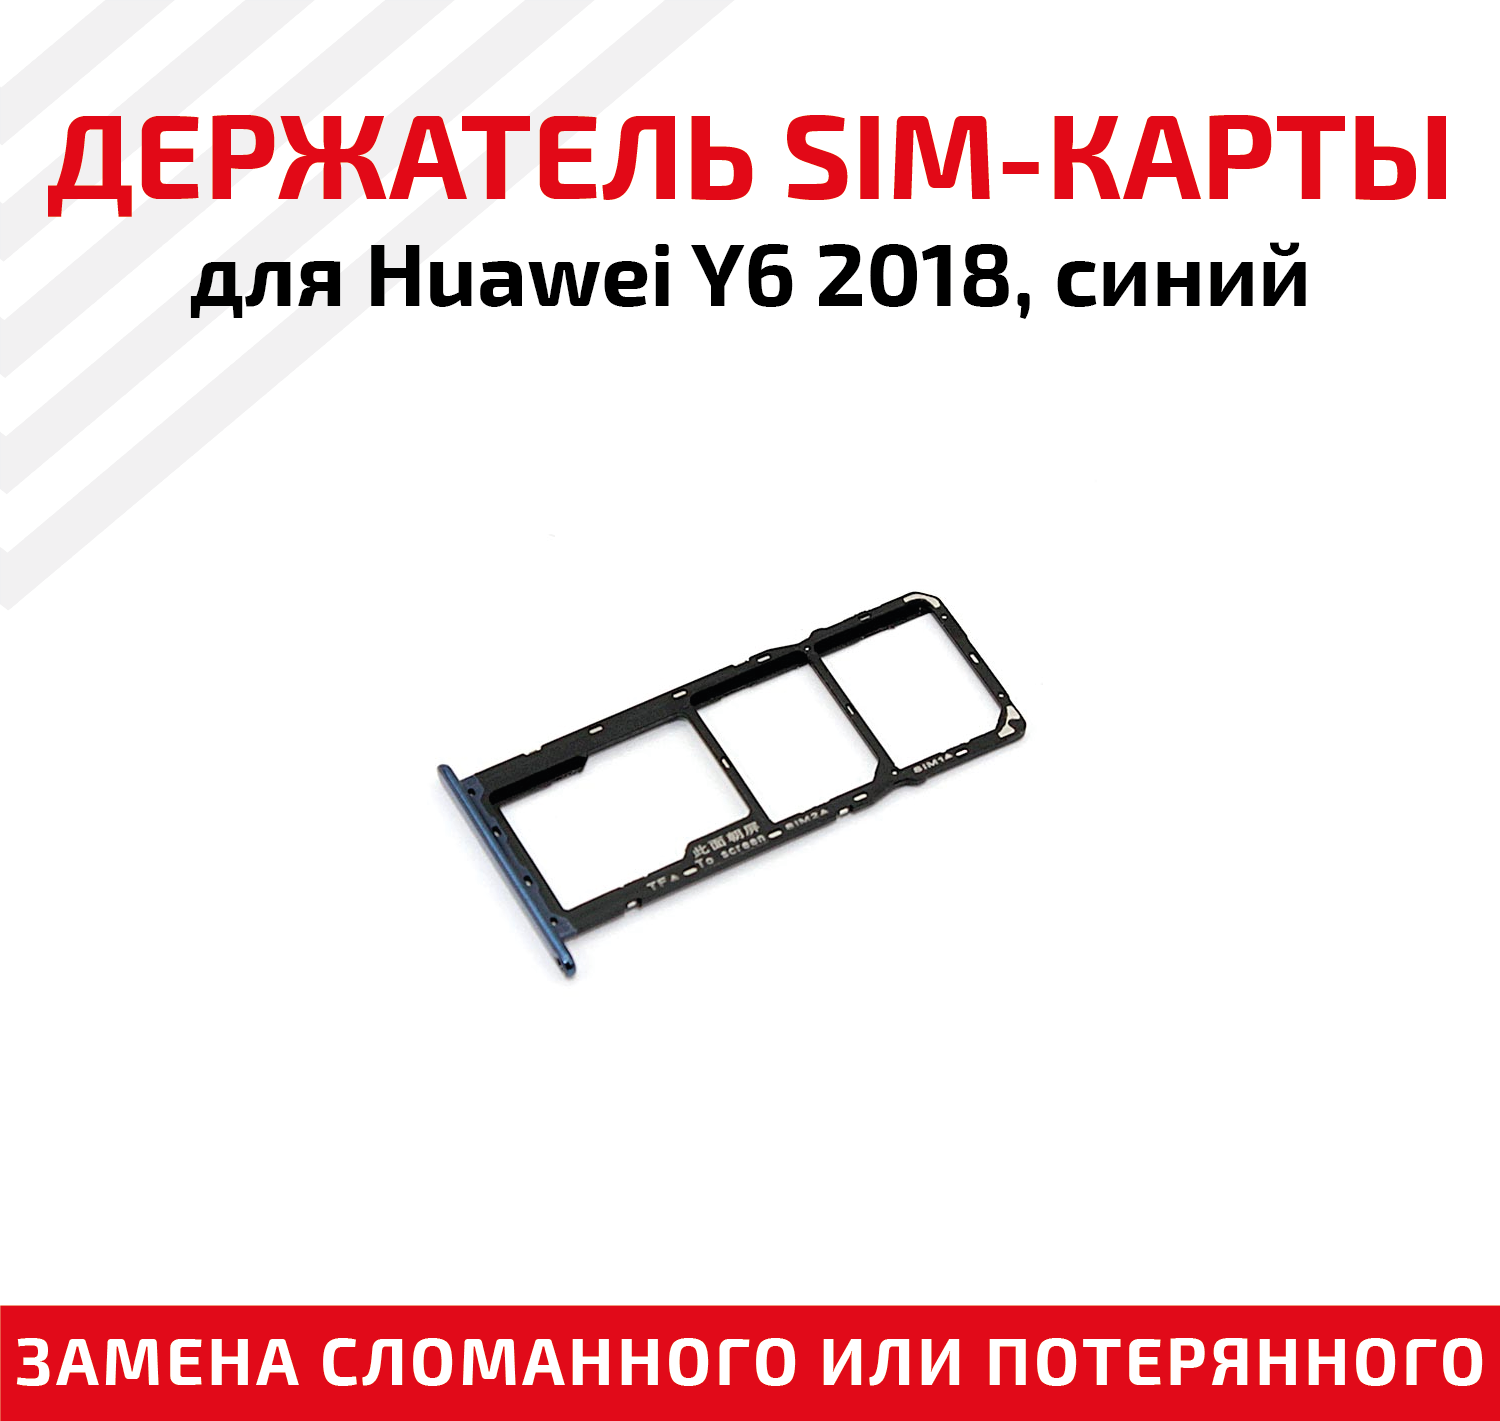 Лоток (держатель, контейнер, слот) SIM-карты для мобильного телефона (смартфона) Huawei Y6 2018, синий